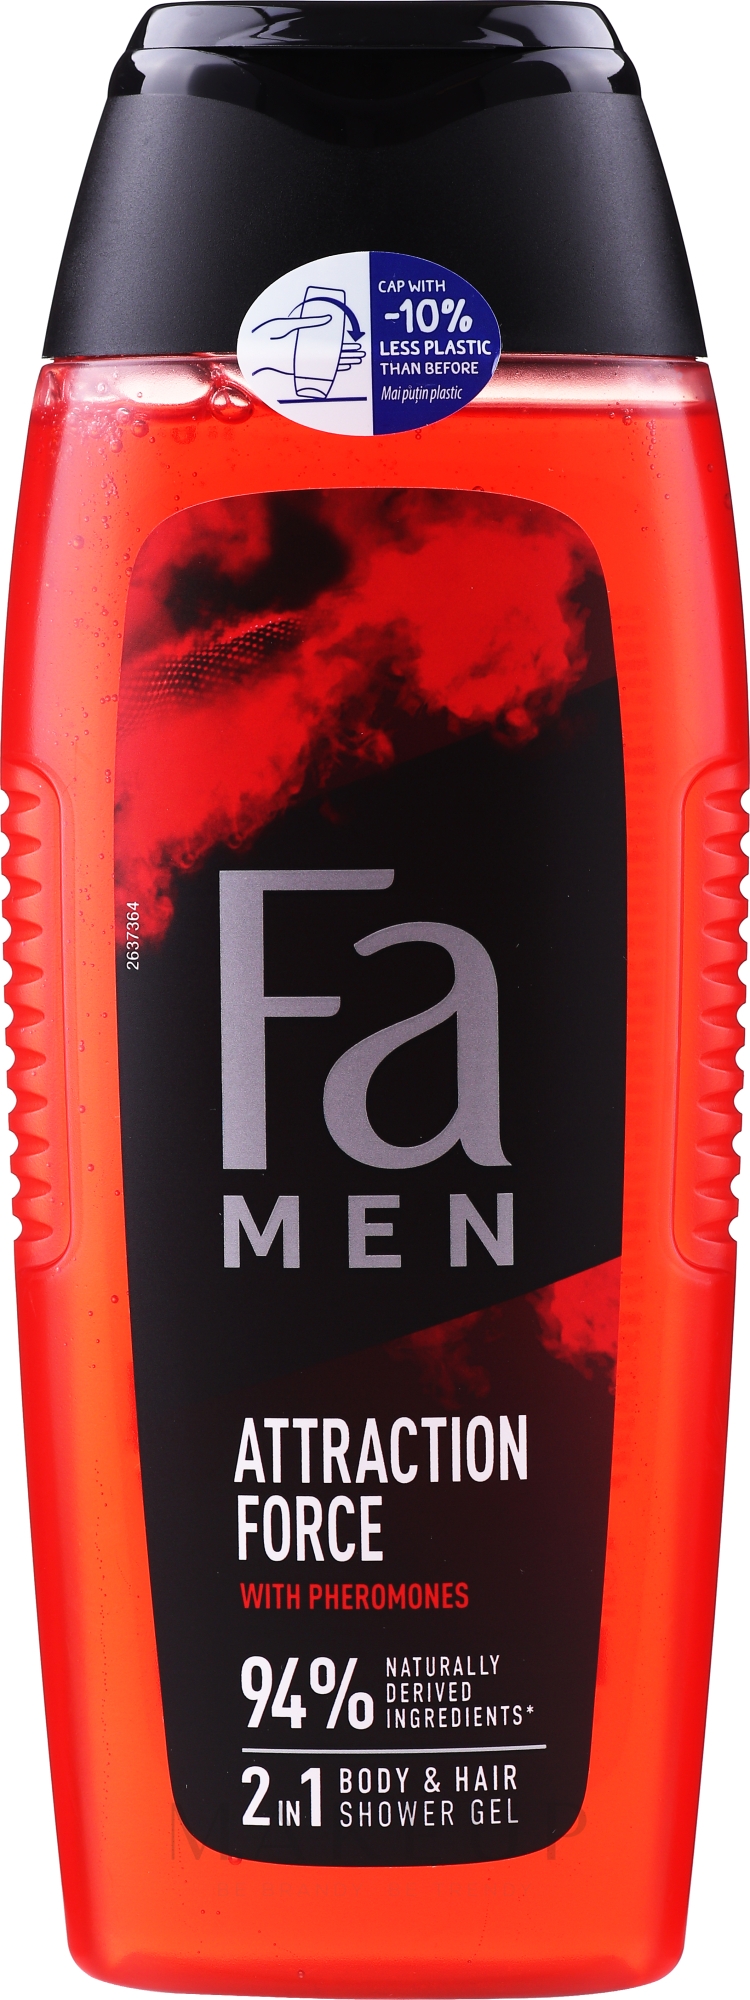 2in1 Duschgel für Körper und Haar mit Pheromonen - Fa Attraction Force Shower Gel — Bild 400 ml